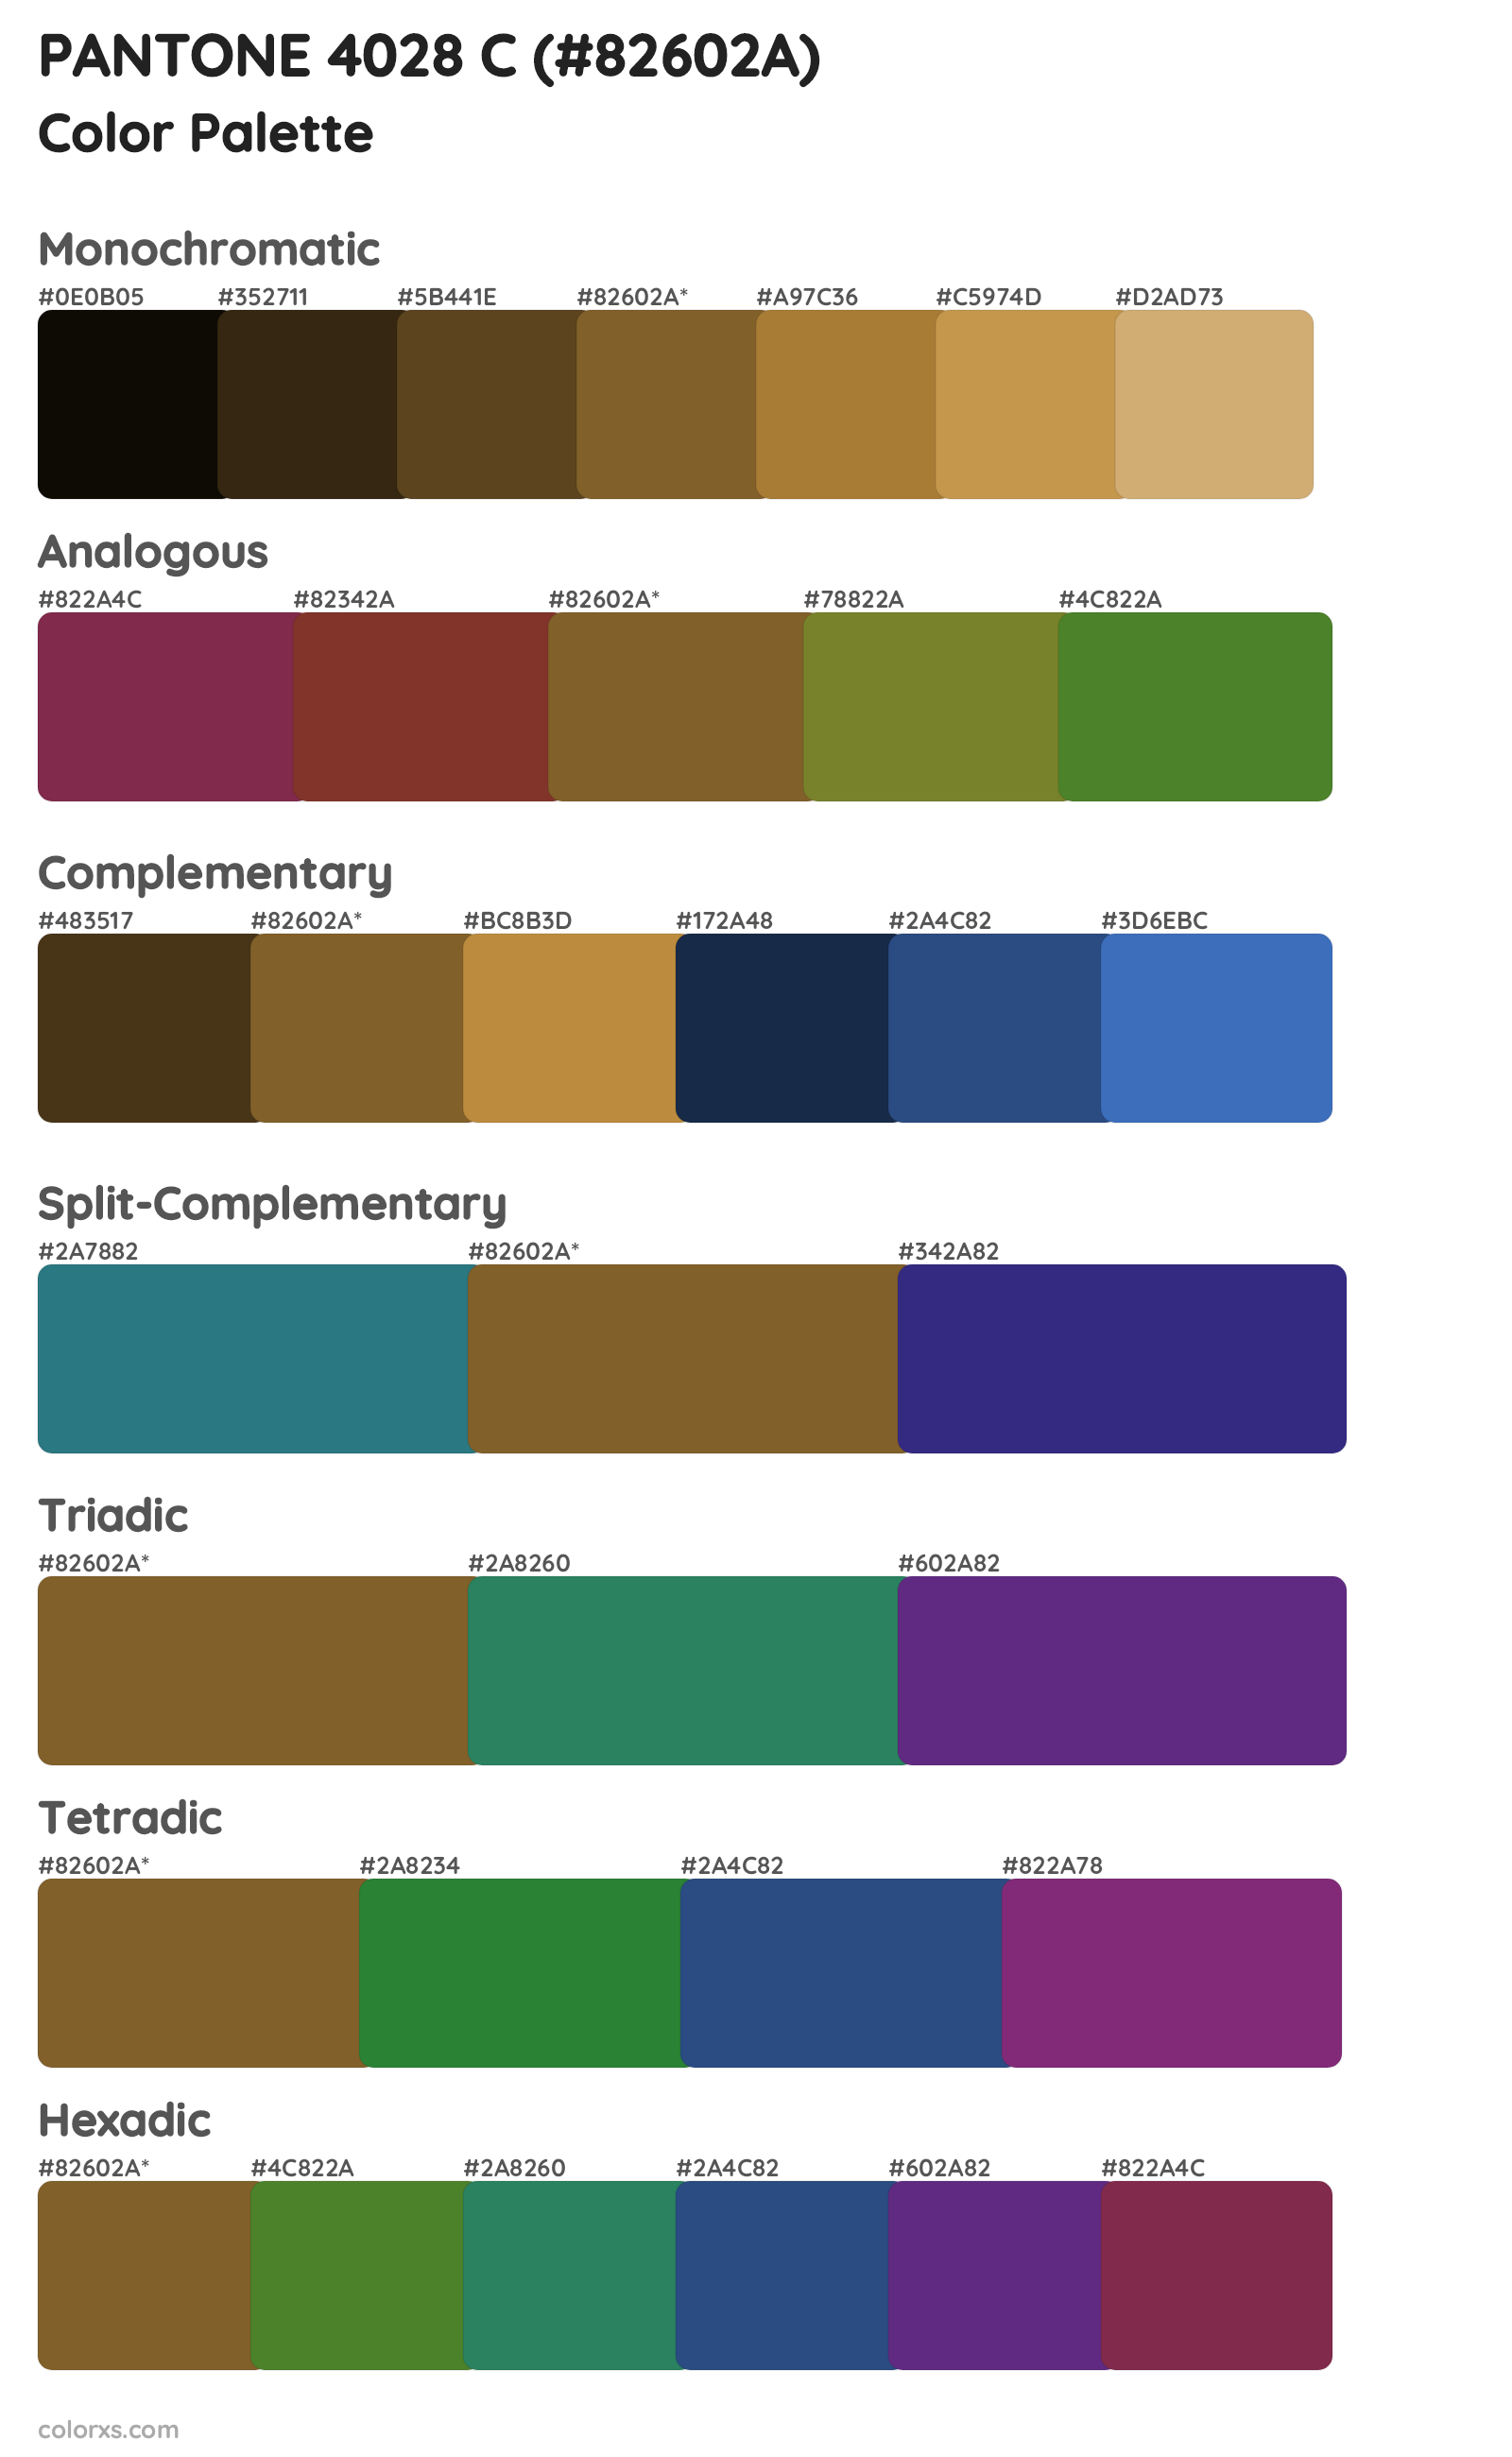 PANTONE 4028 C Color Scheme Palettes